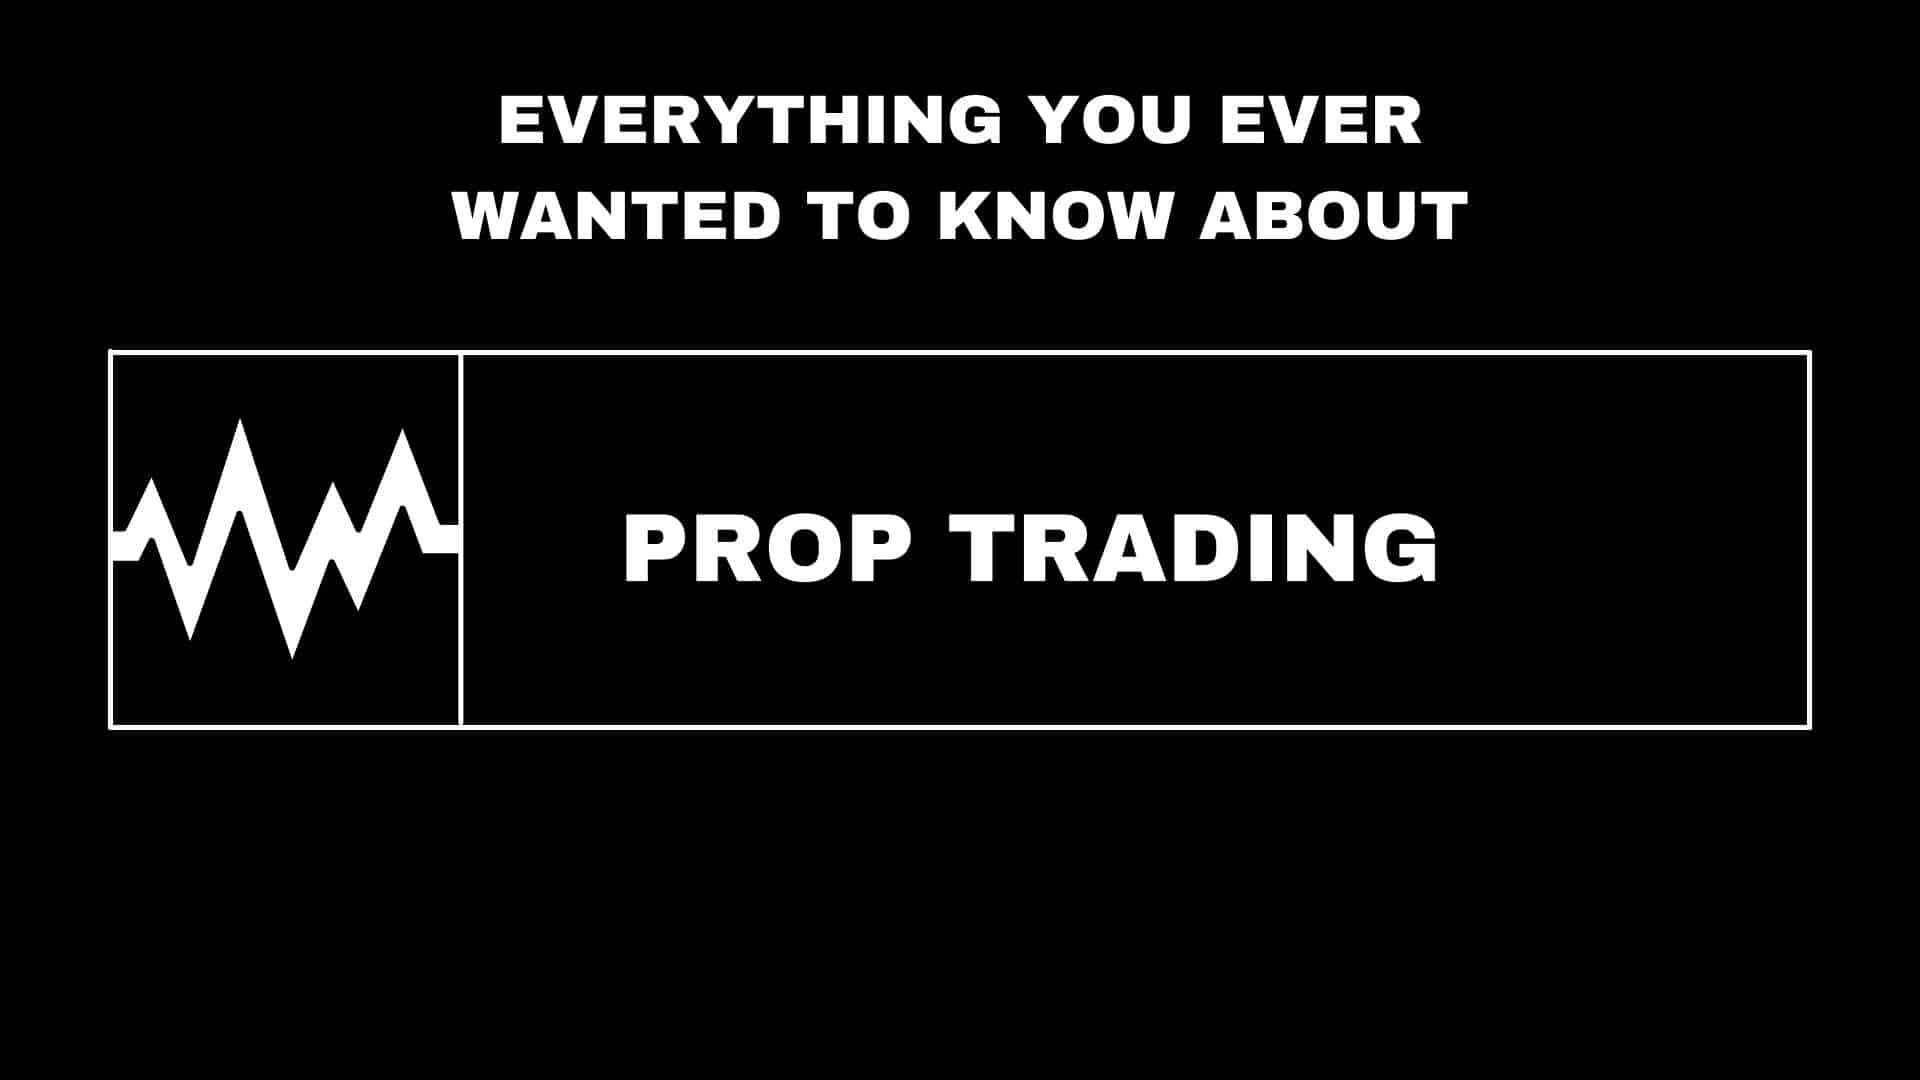 پراپ تریدینگ (prop trading)چیست؟! صفر تا صد این موضوع پولساز